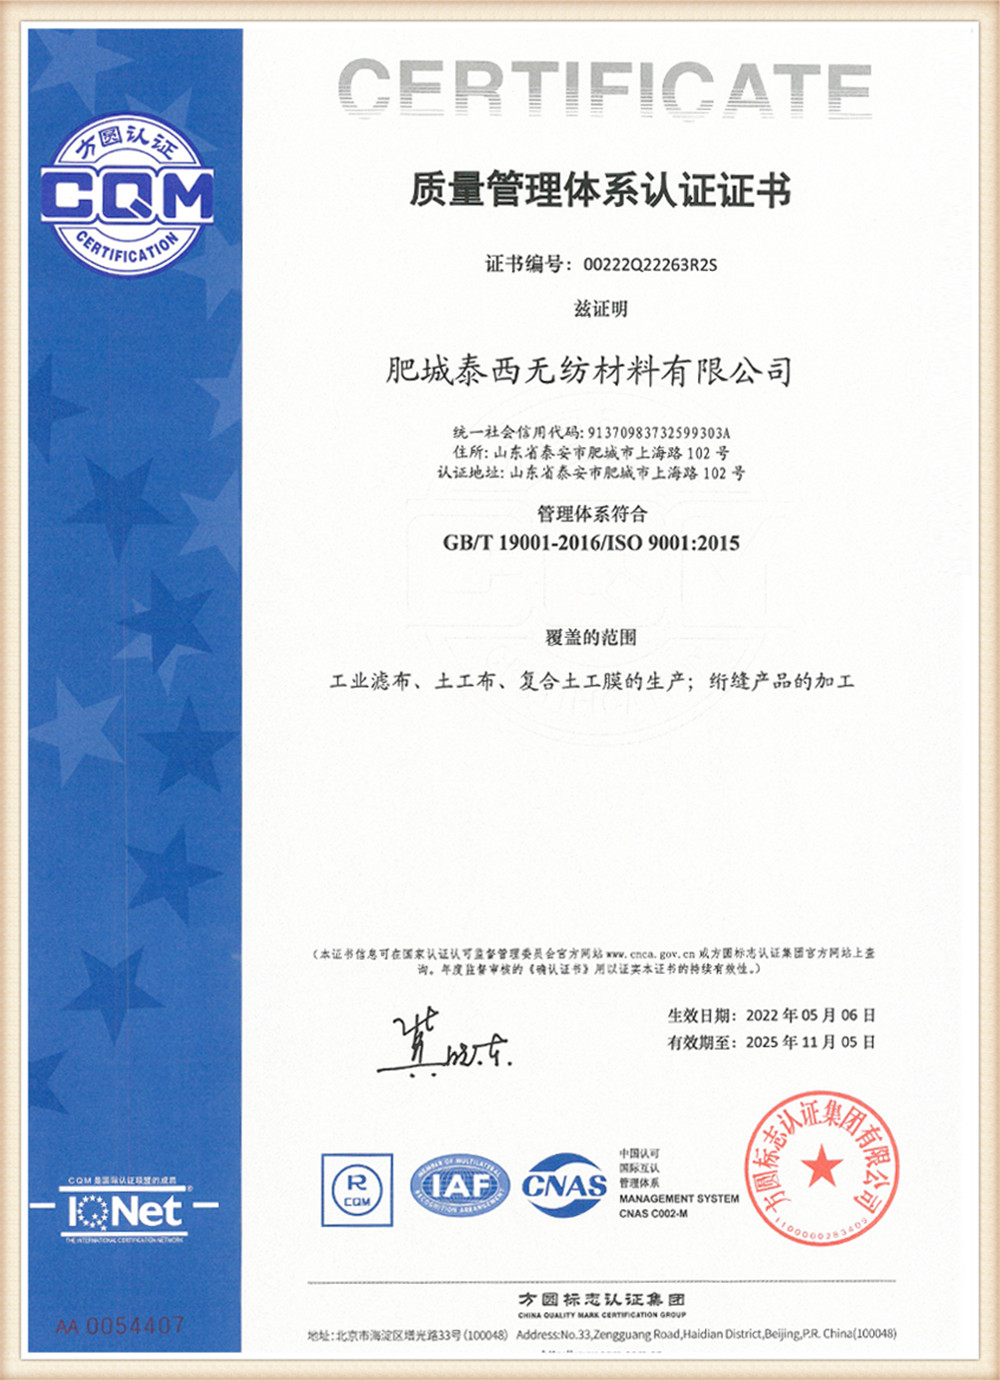 Kvaliteedijuhtimissüsteemi sertifitseerimine